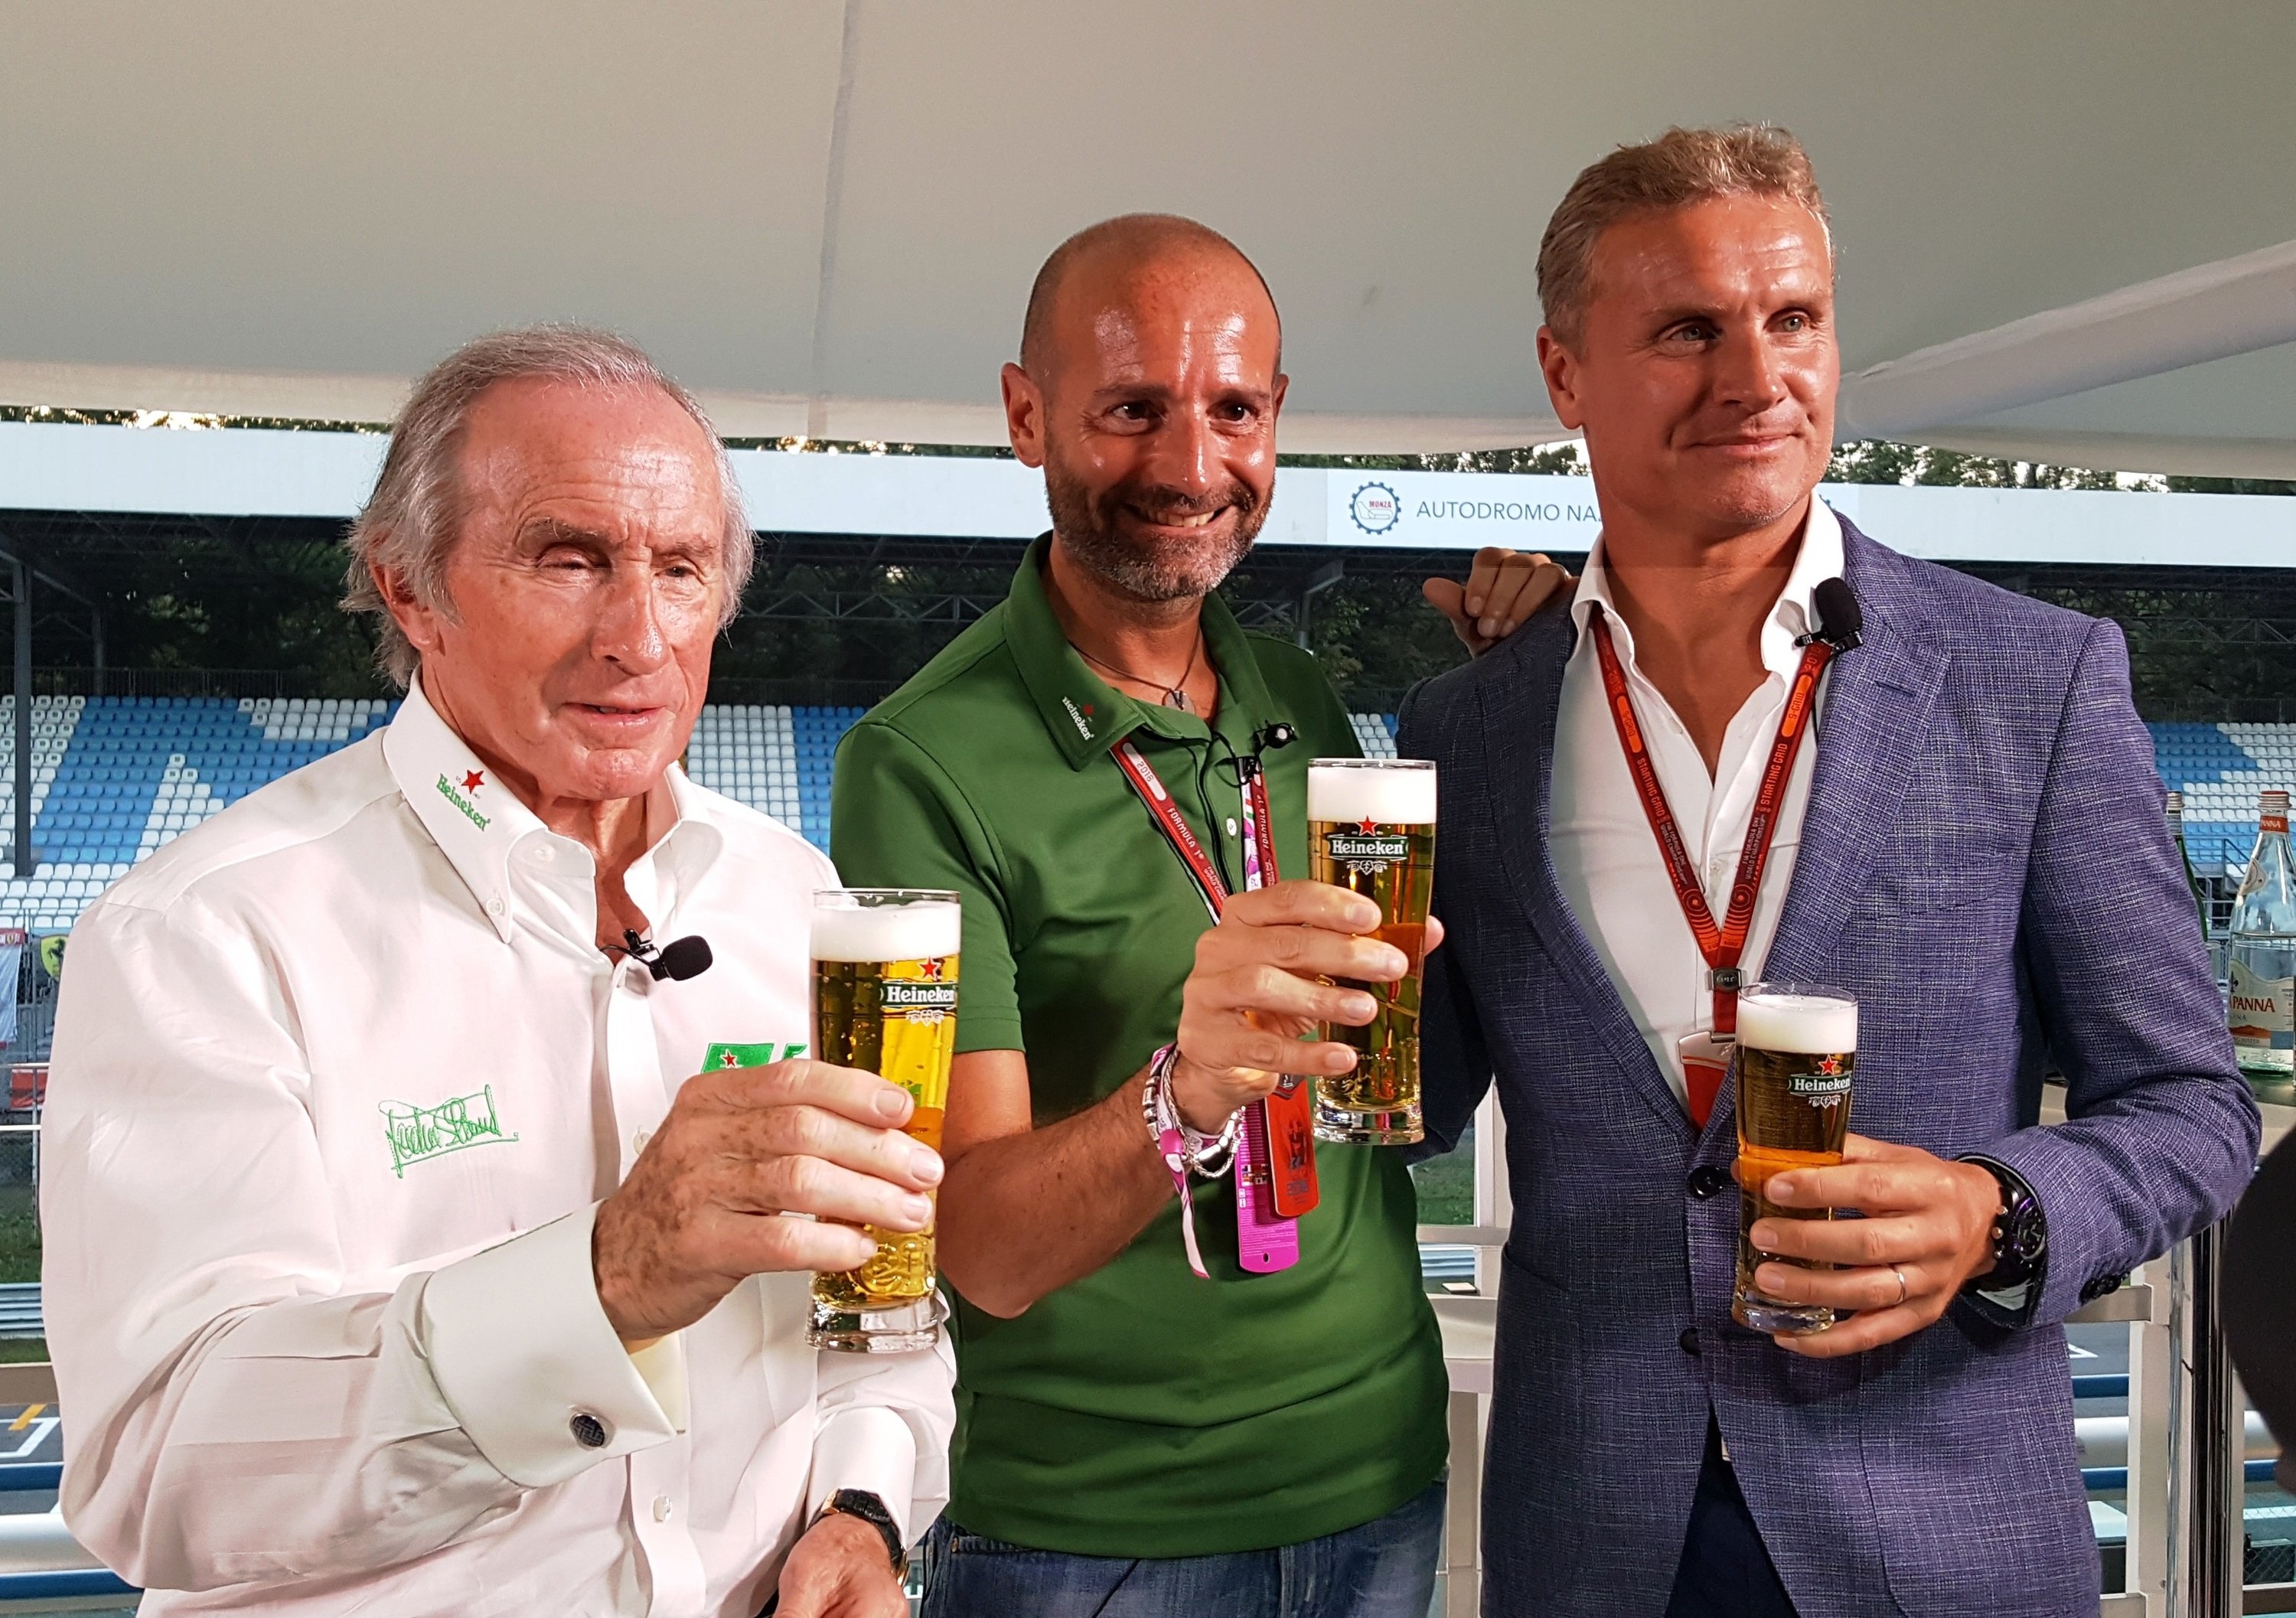 Heineken sbarca in F1: comunicazione sociale e due spot con Stewart e Coulthard